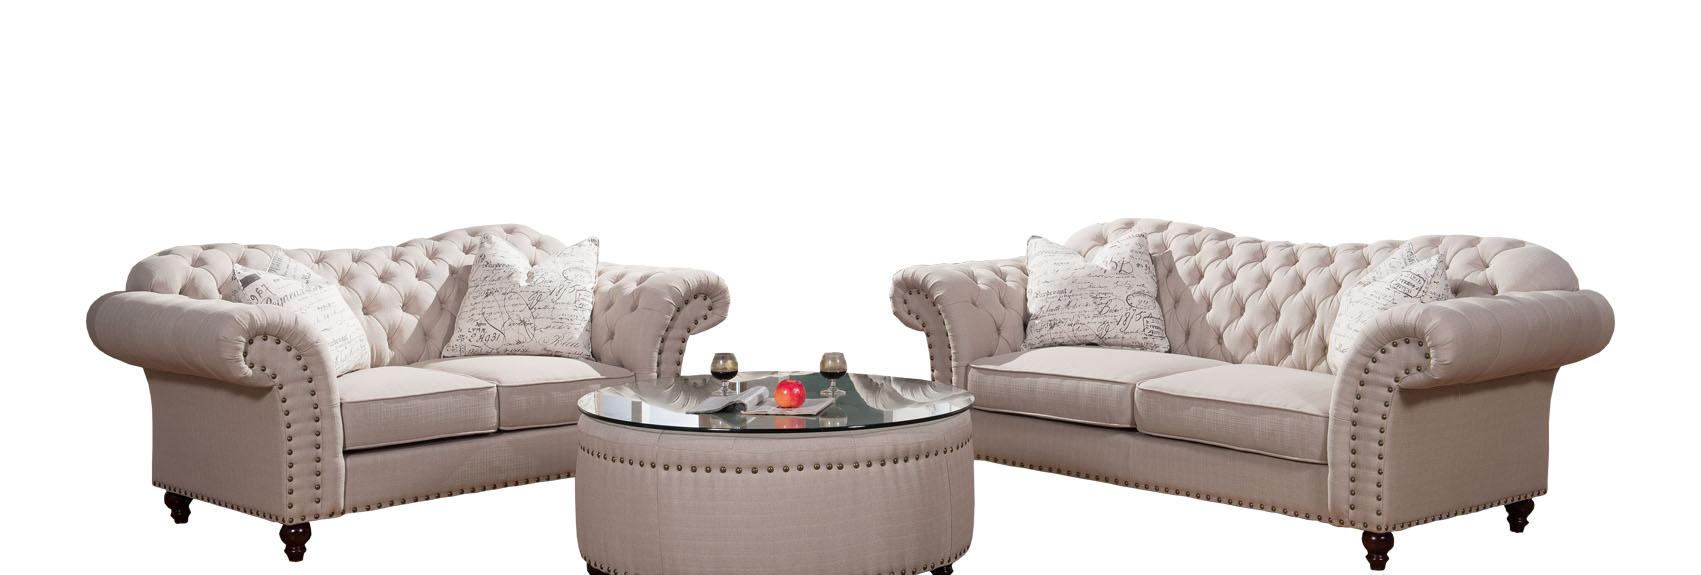 McFerran Furniture SF1709 Sofa Set